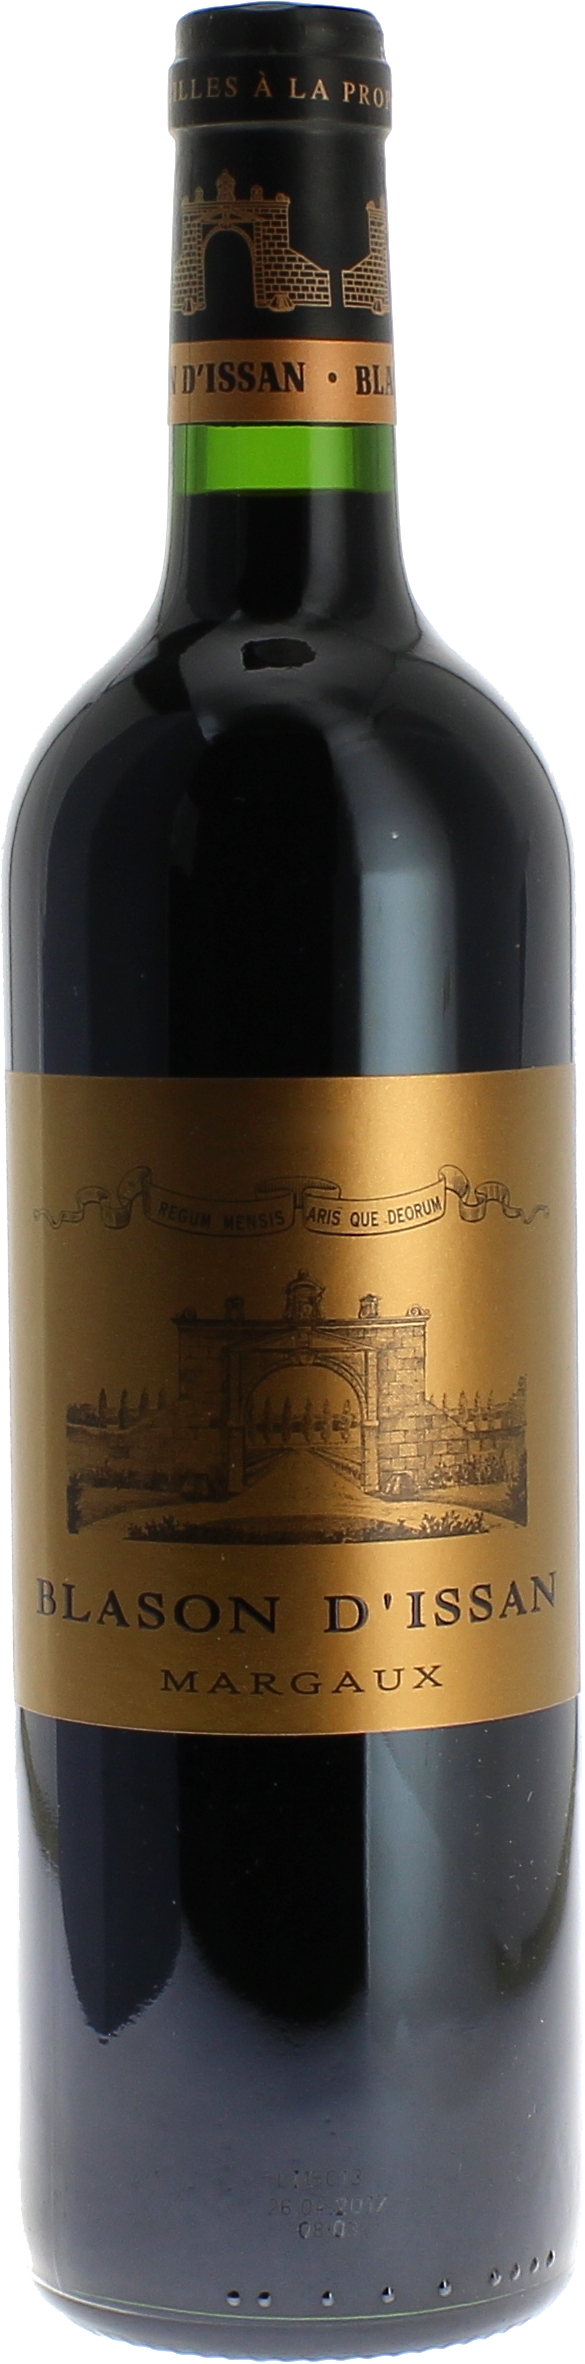 Blason d'issan 2021 2nd vin du Chteau D'Issan Margaux, Bordeaux rouge